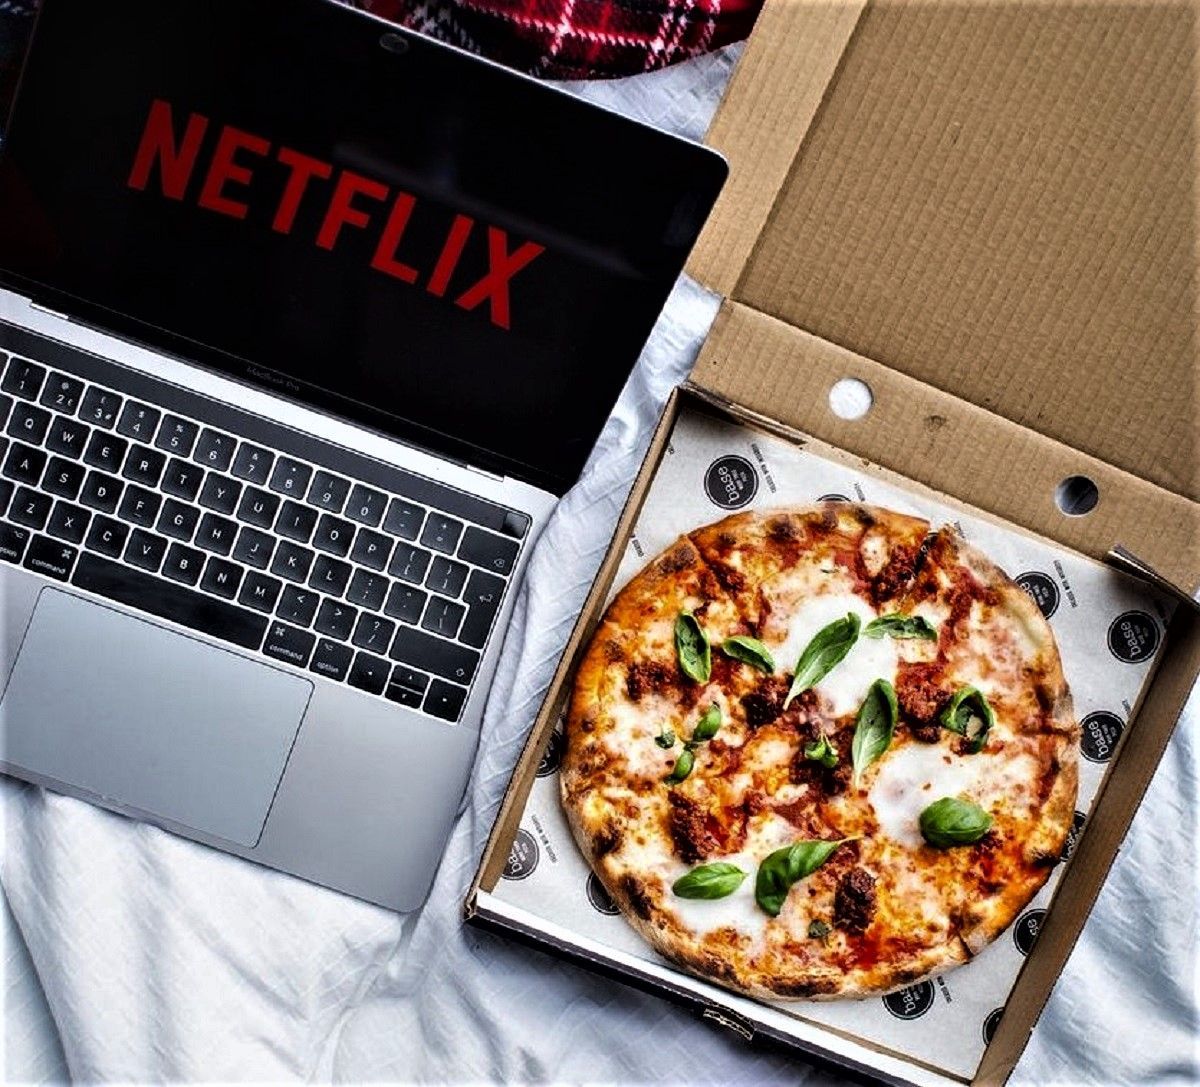 Смотреть Netflix, есть пиццу и зарабатывать: вакансия мечты для профессионального сериаломана